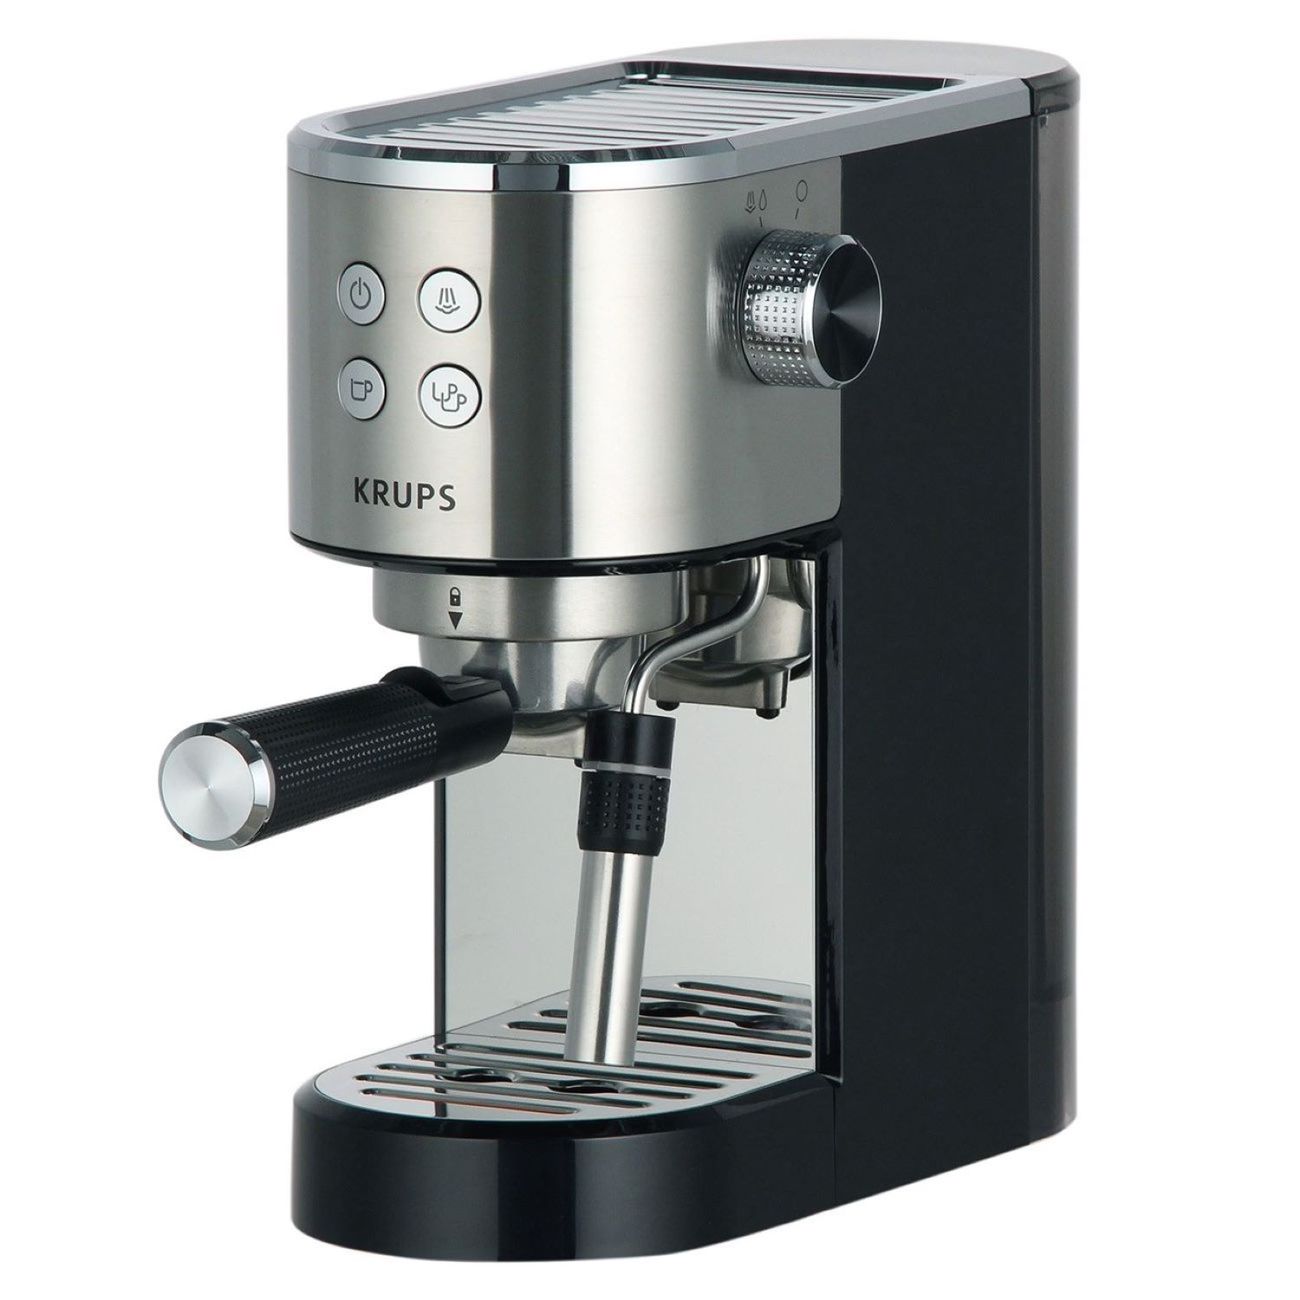 Рожковая кофеварка KRUPS XP444C10 серебристый, черный рожковая кофеварка opio xp320830 с кофемолкой krups fast touch f2034232